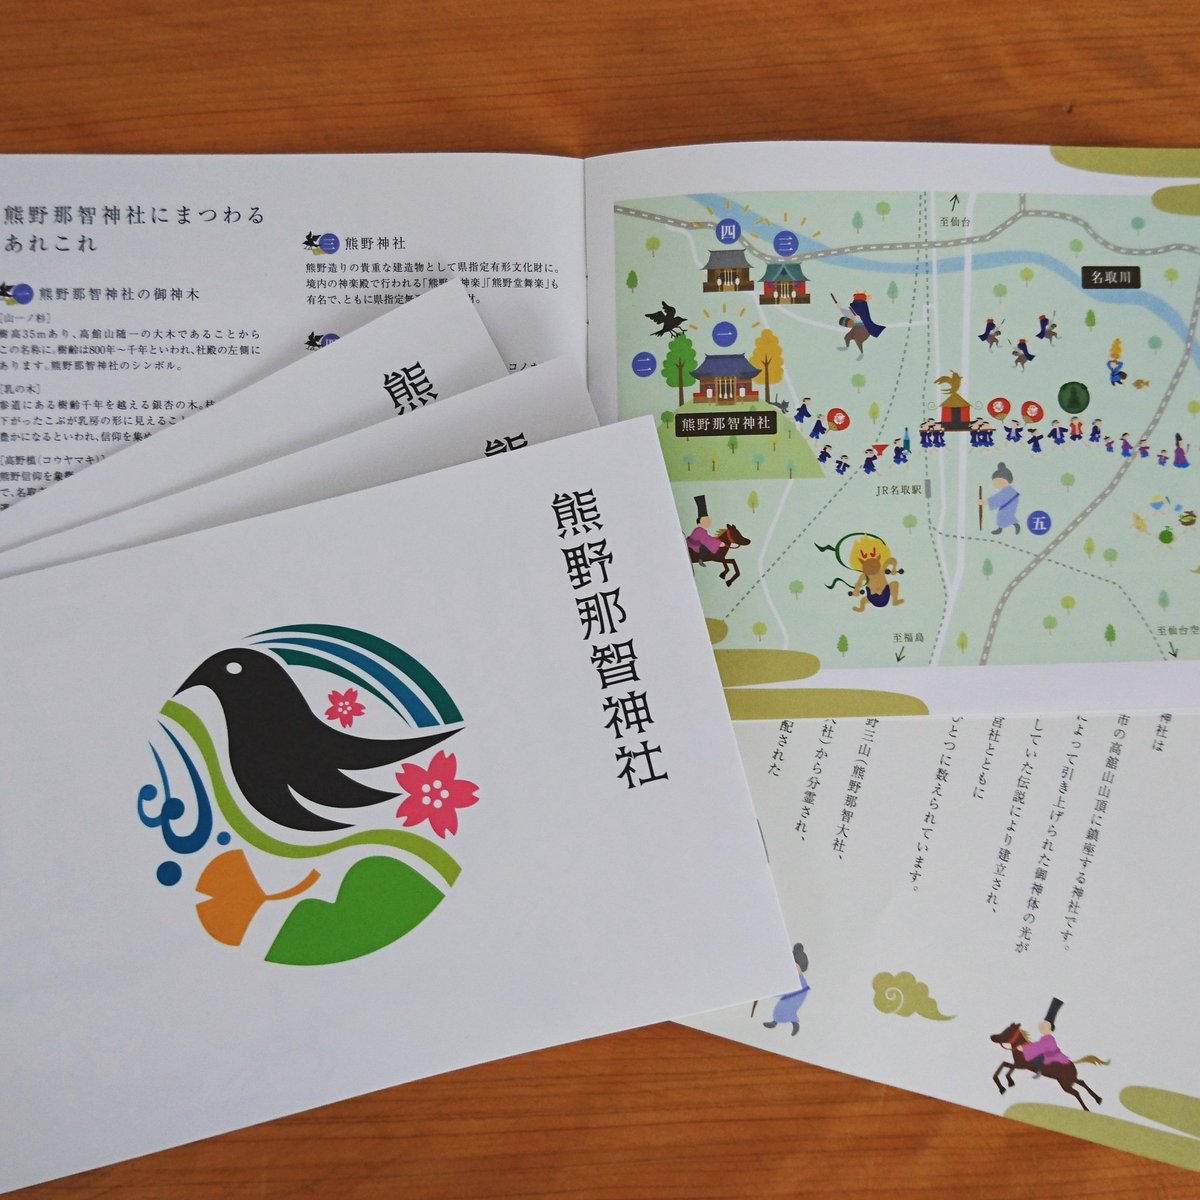 Irodori Natori En Twitter 熊野那智神社 の新しい パンフレット 可愛いイラストで構成されていて大人向けの絵本のよう 表紙に描かれている 熊野那智神社の御紋は 日本タイポグラフィ年鑑 18 で入賞 様々な デザイン 系の雑誌でも 紹介されているんですよ